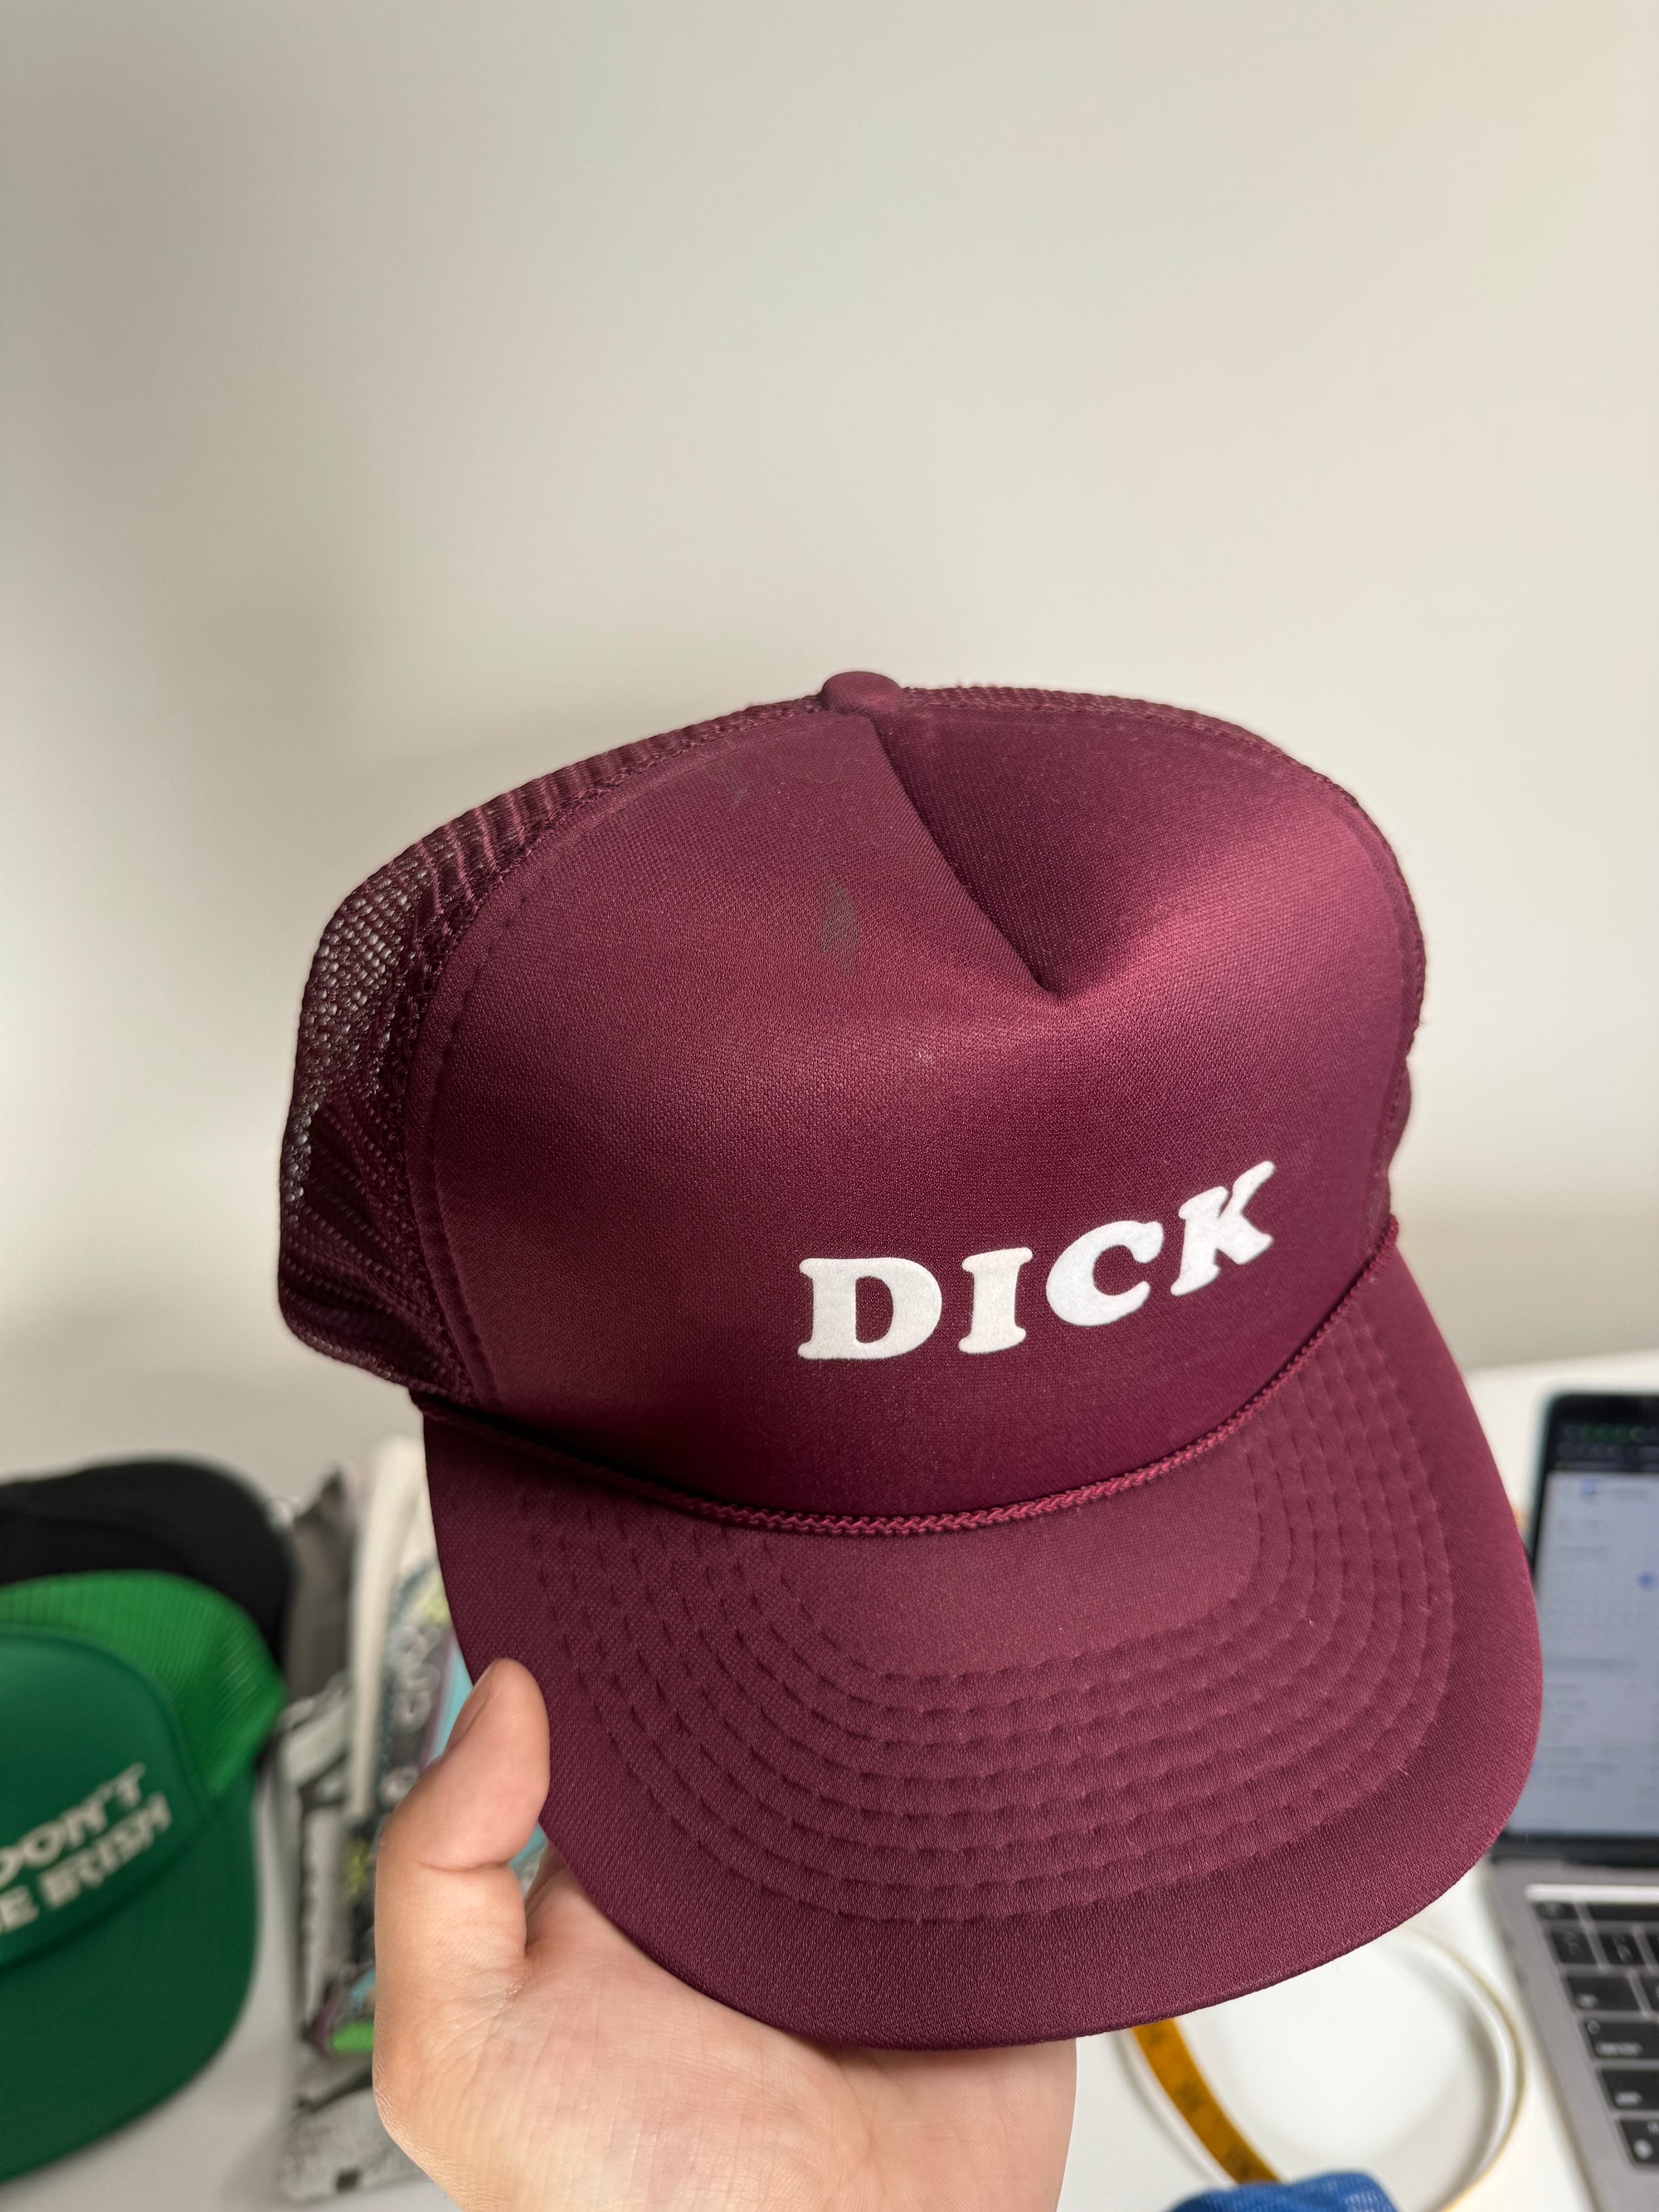 1980s “Dick” Trucker Hat